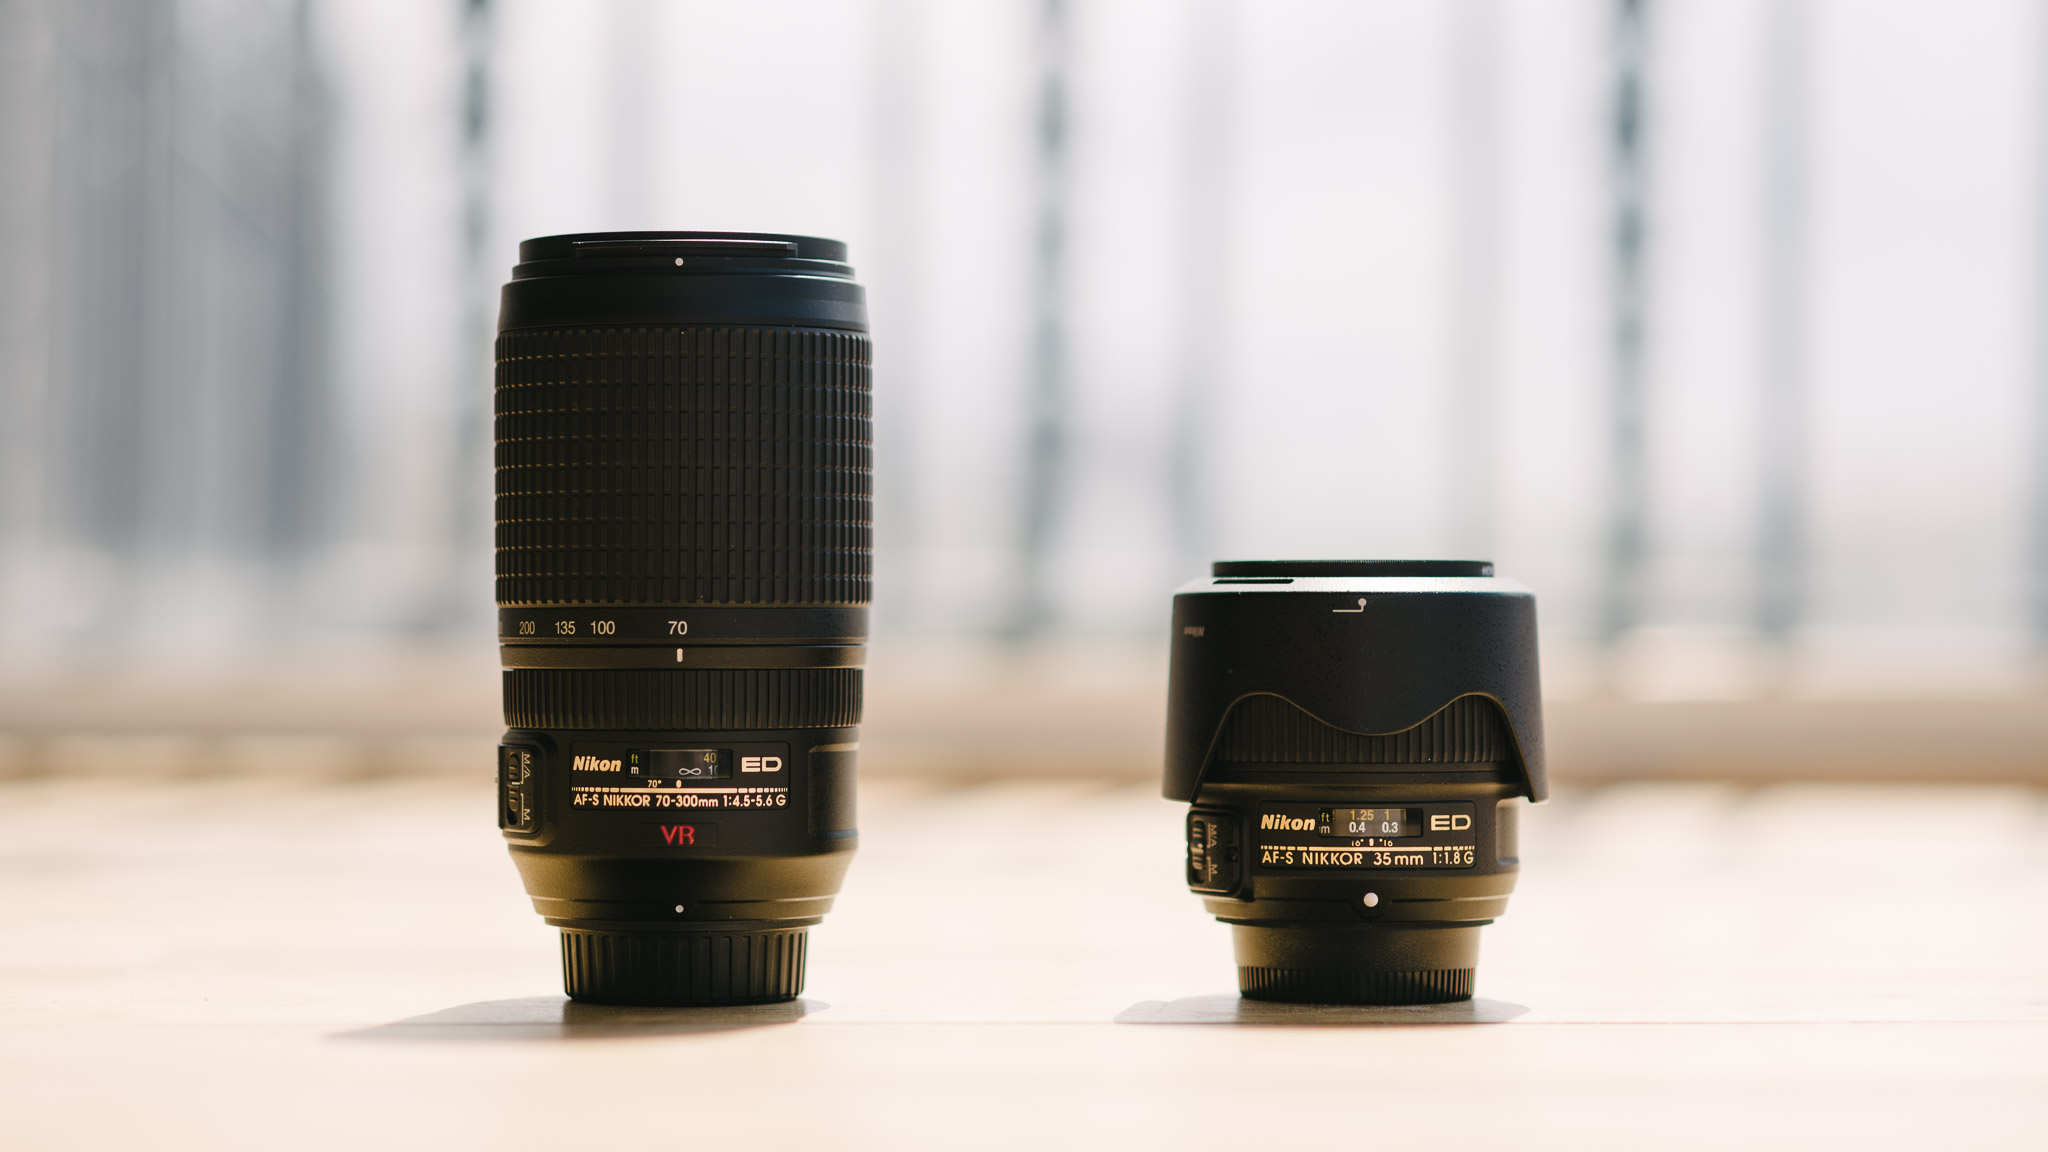 two lenses for full-frame cameras: nikkor 70-300mm f/4.5-5.6 and nikkor 35mm f/1.8